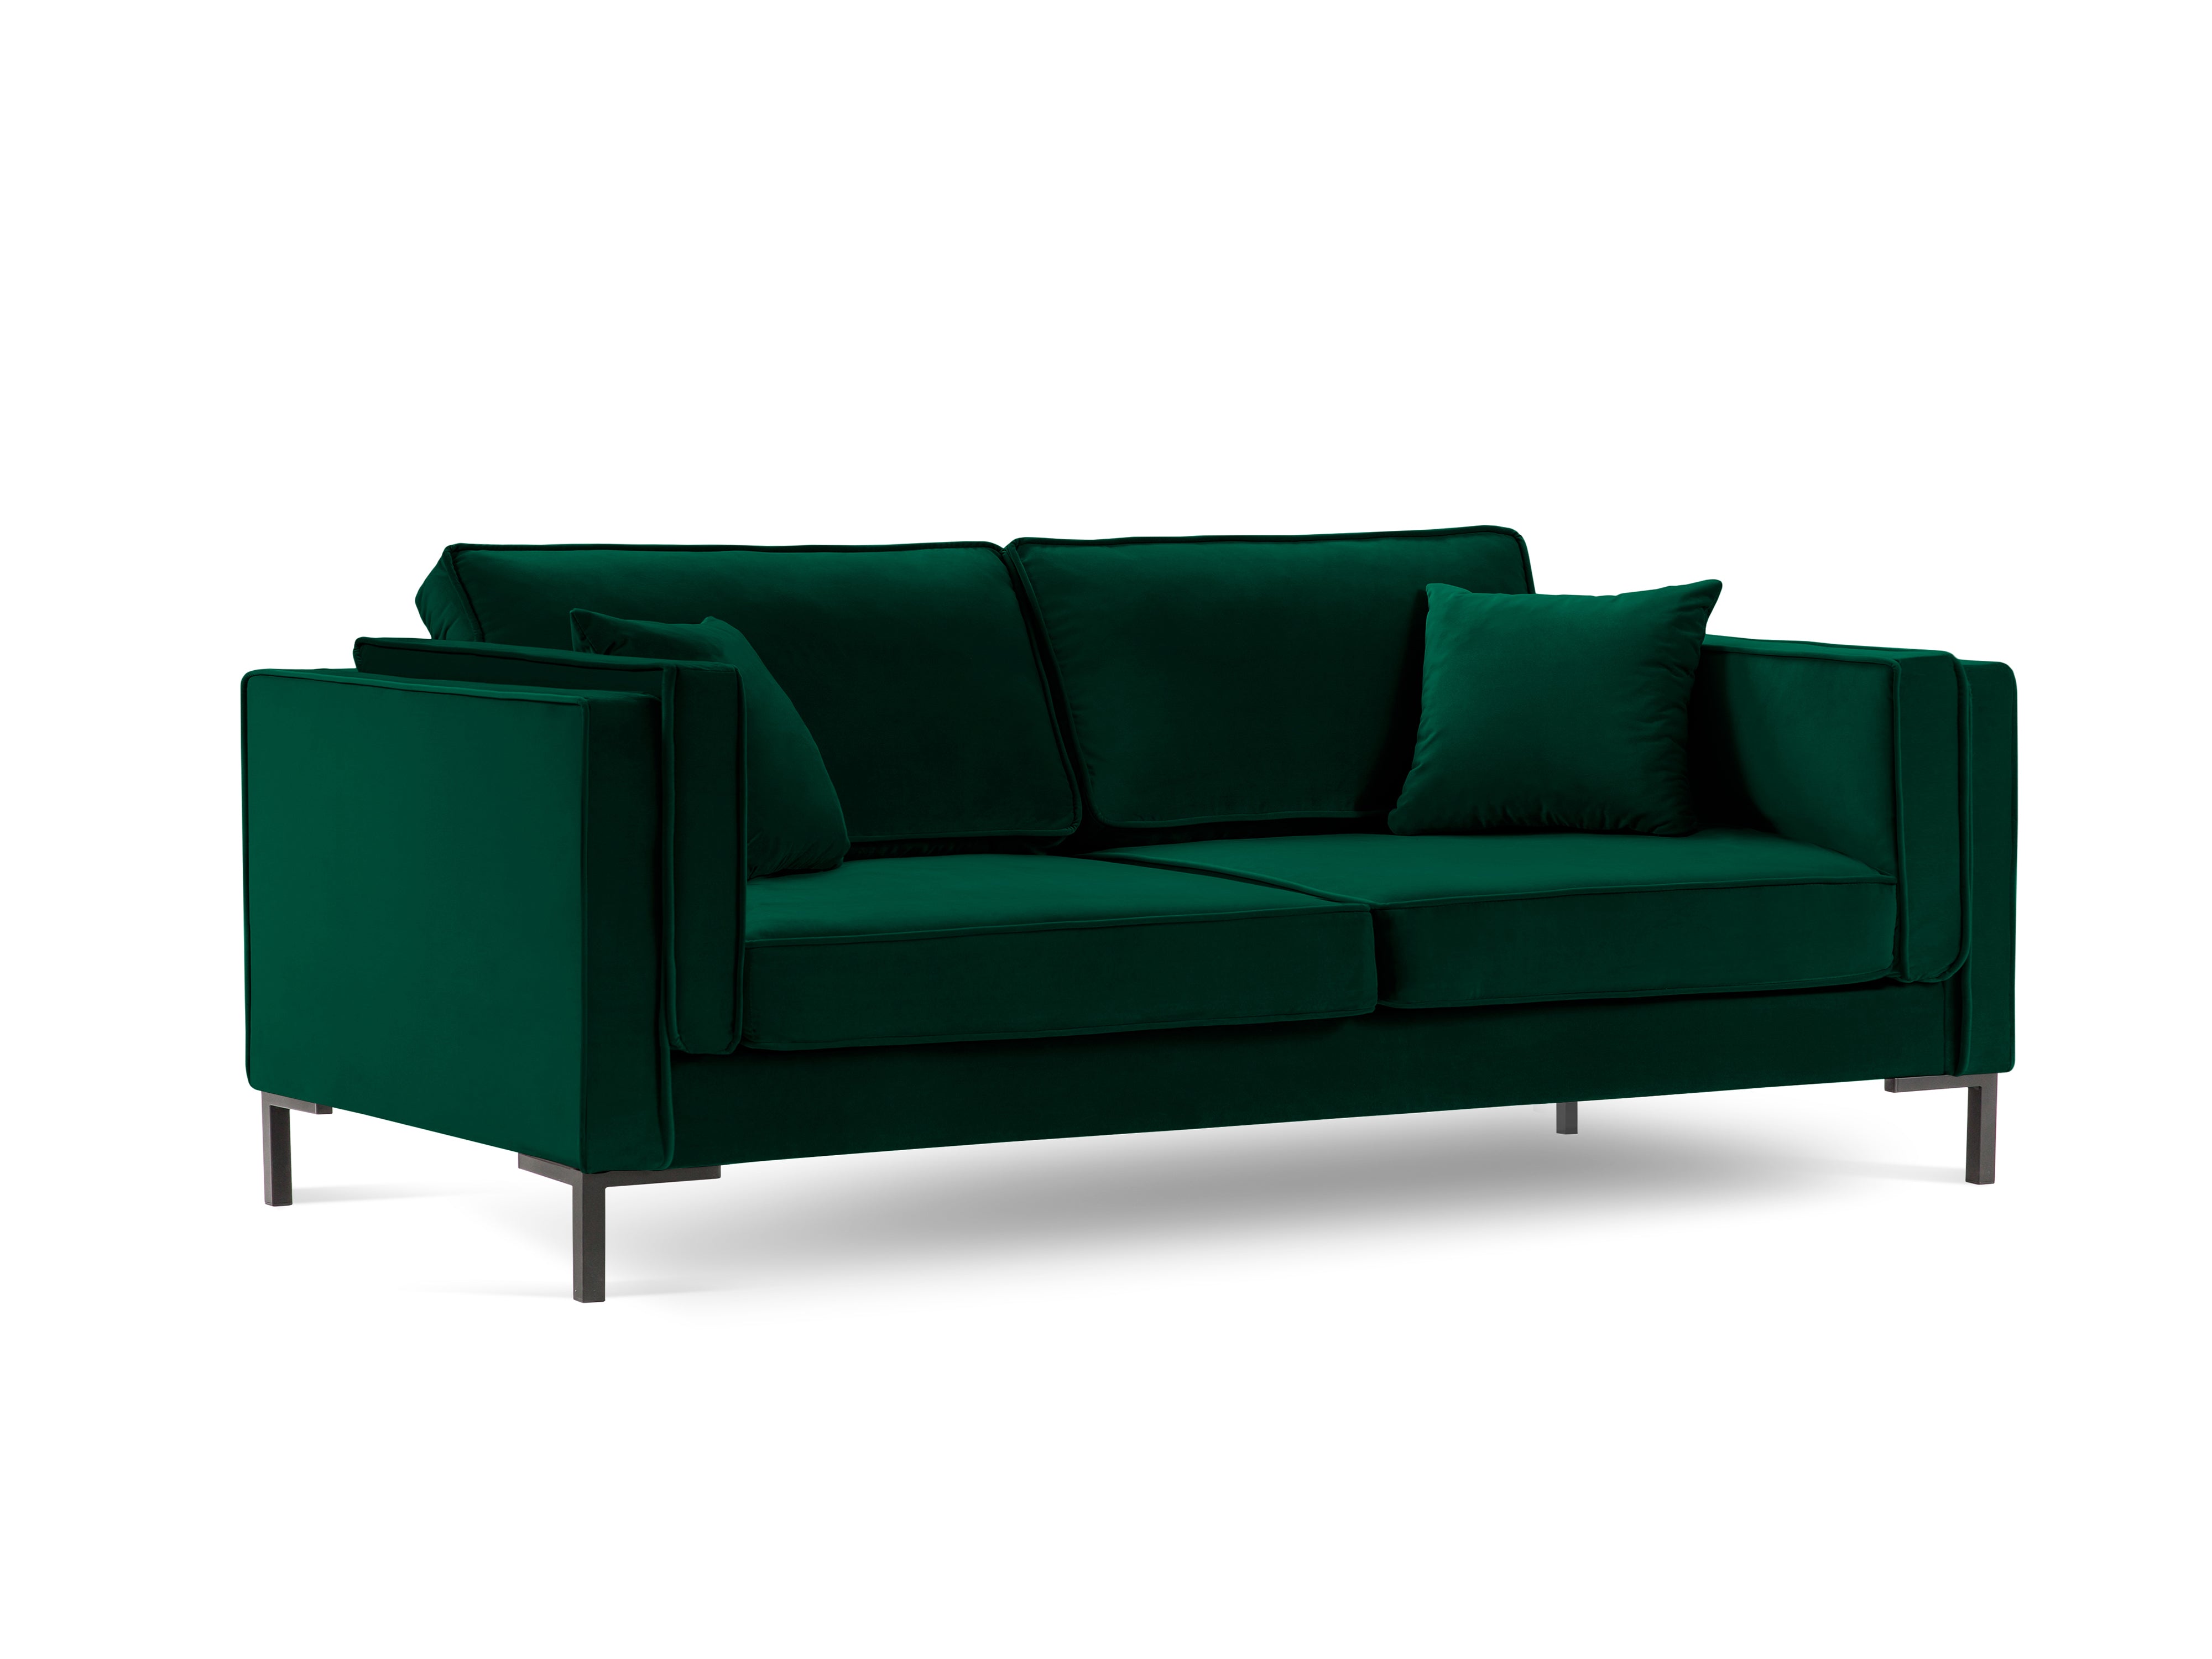 LUIS bottle green velvet 4-seater sofa with black base